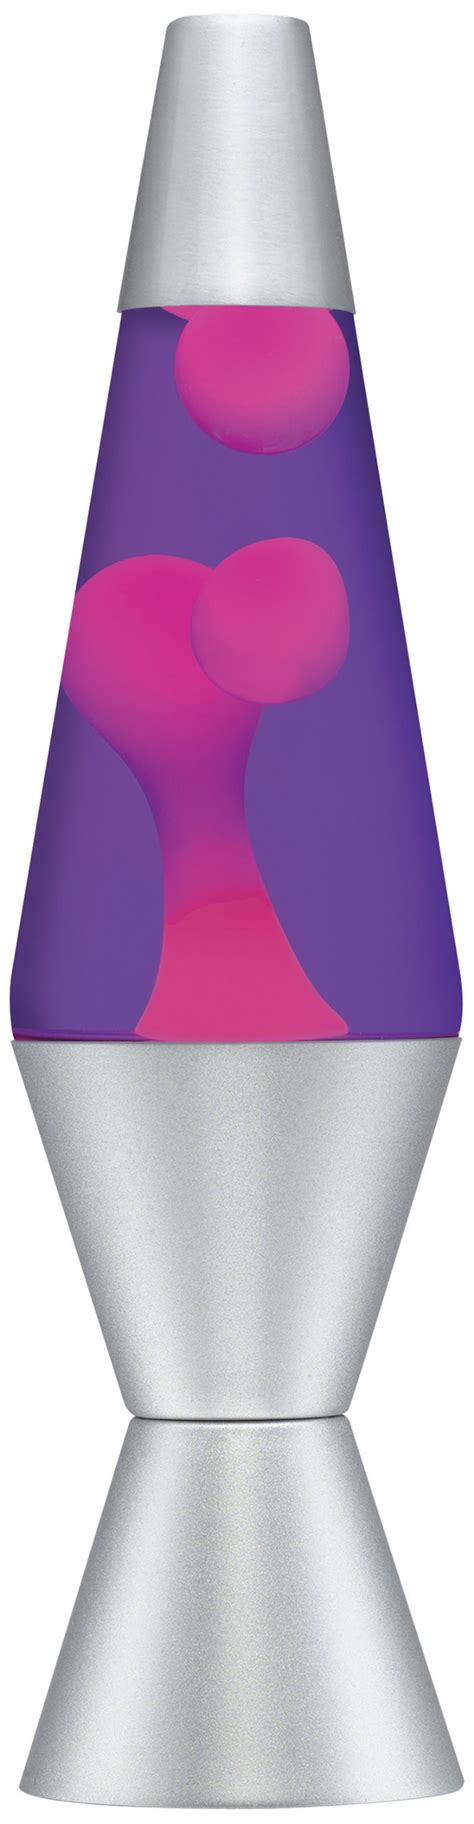 buy lava lamp 14 5 purple pink aluminium 14 5 inch online at desertcartuae